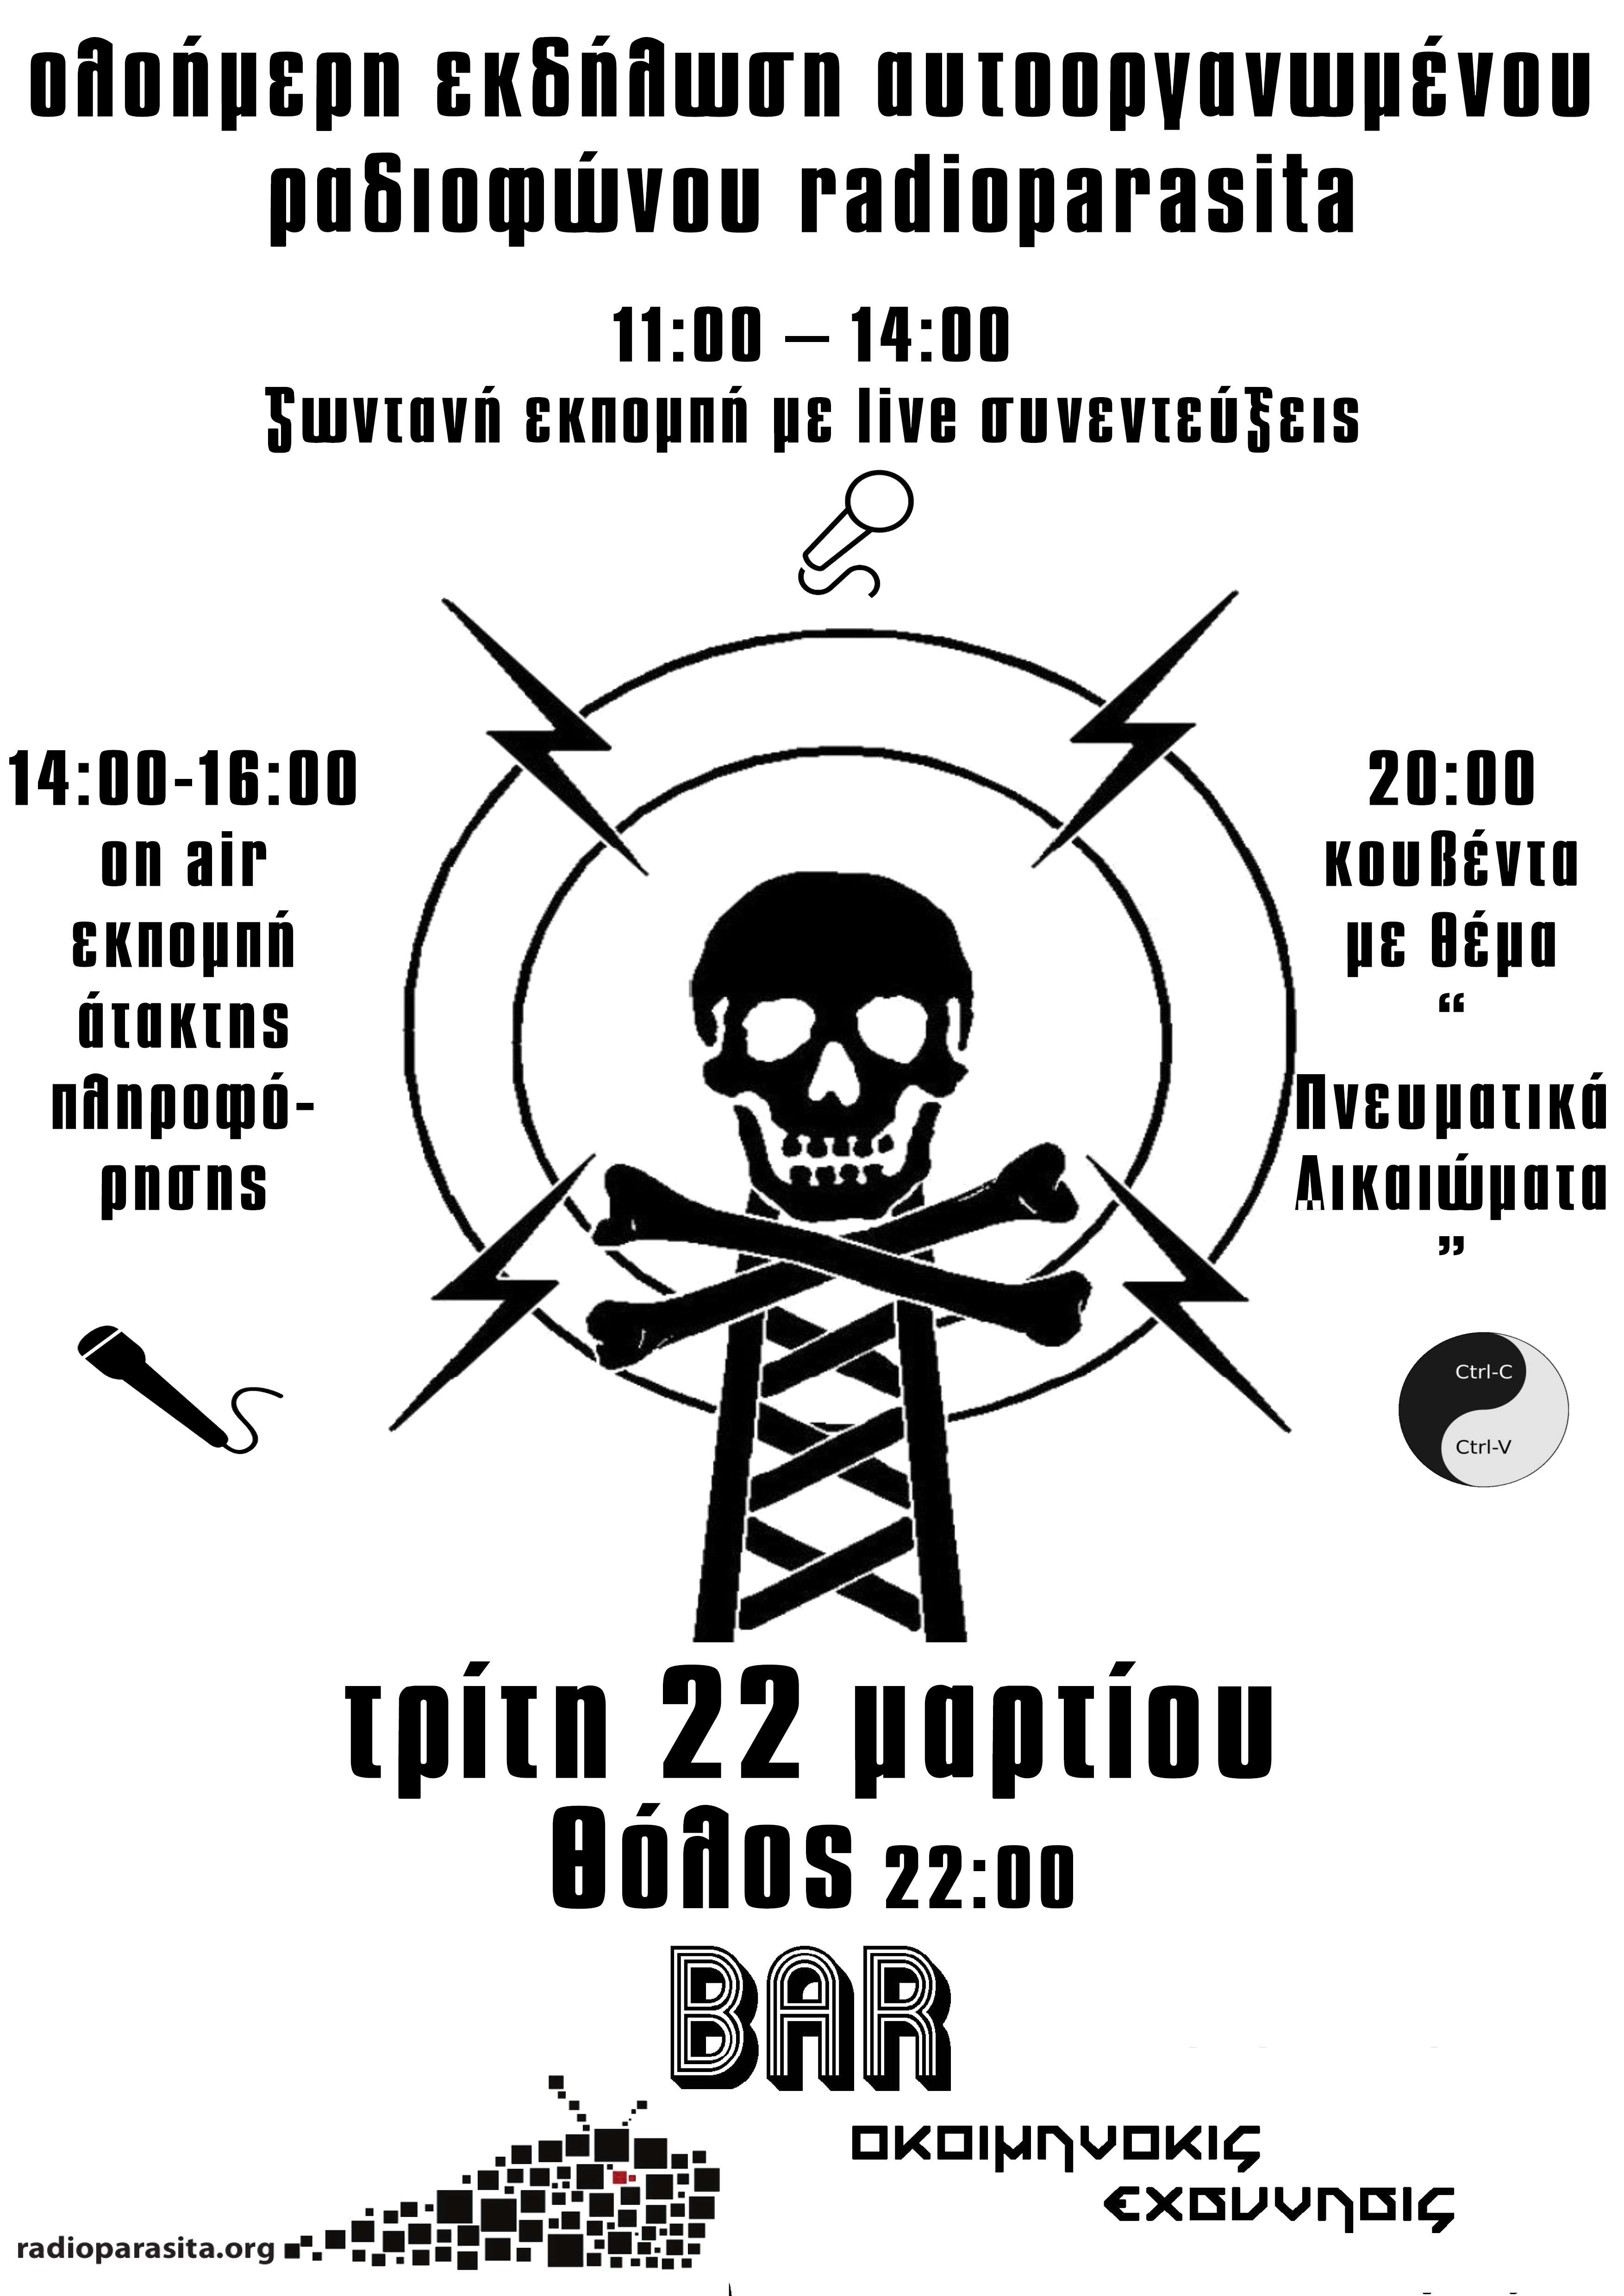 Βόλος: Ολοήμερη εκδήλωση αυτοοργανωμένου ραδιοφώνου RadioParasita